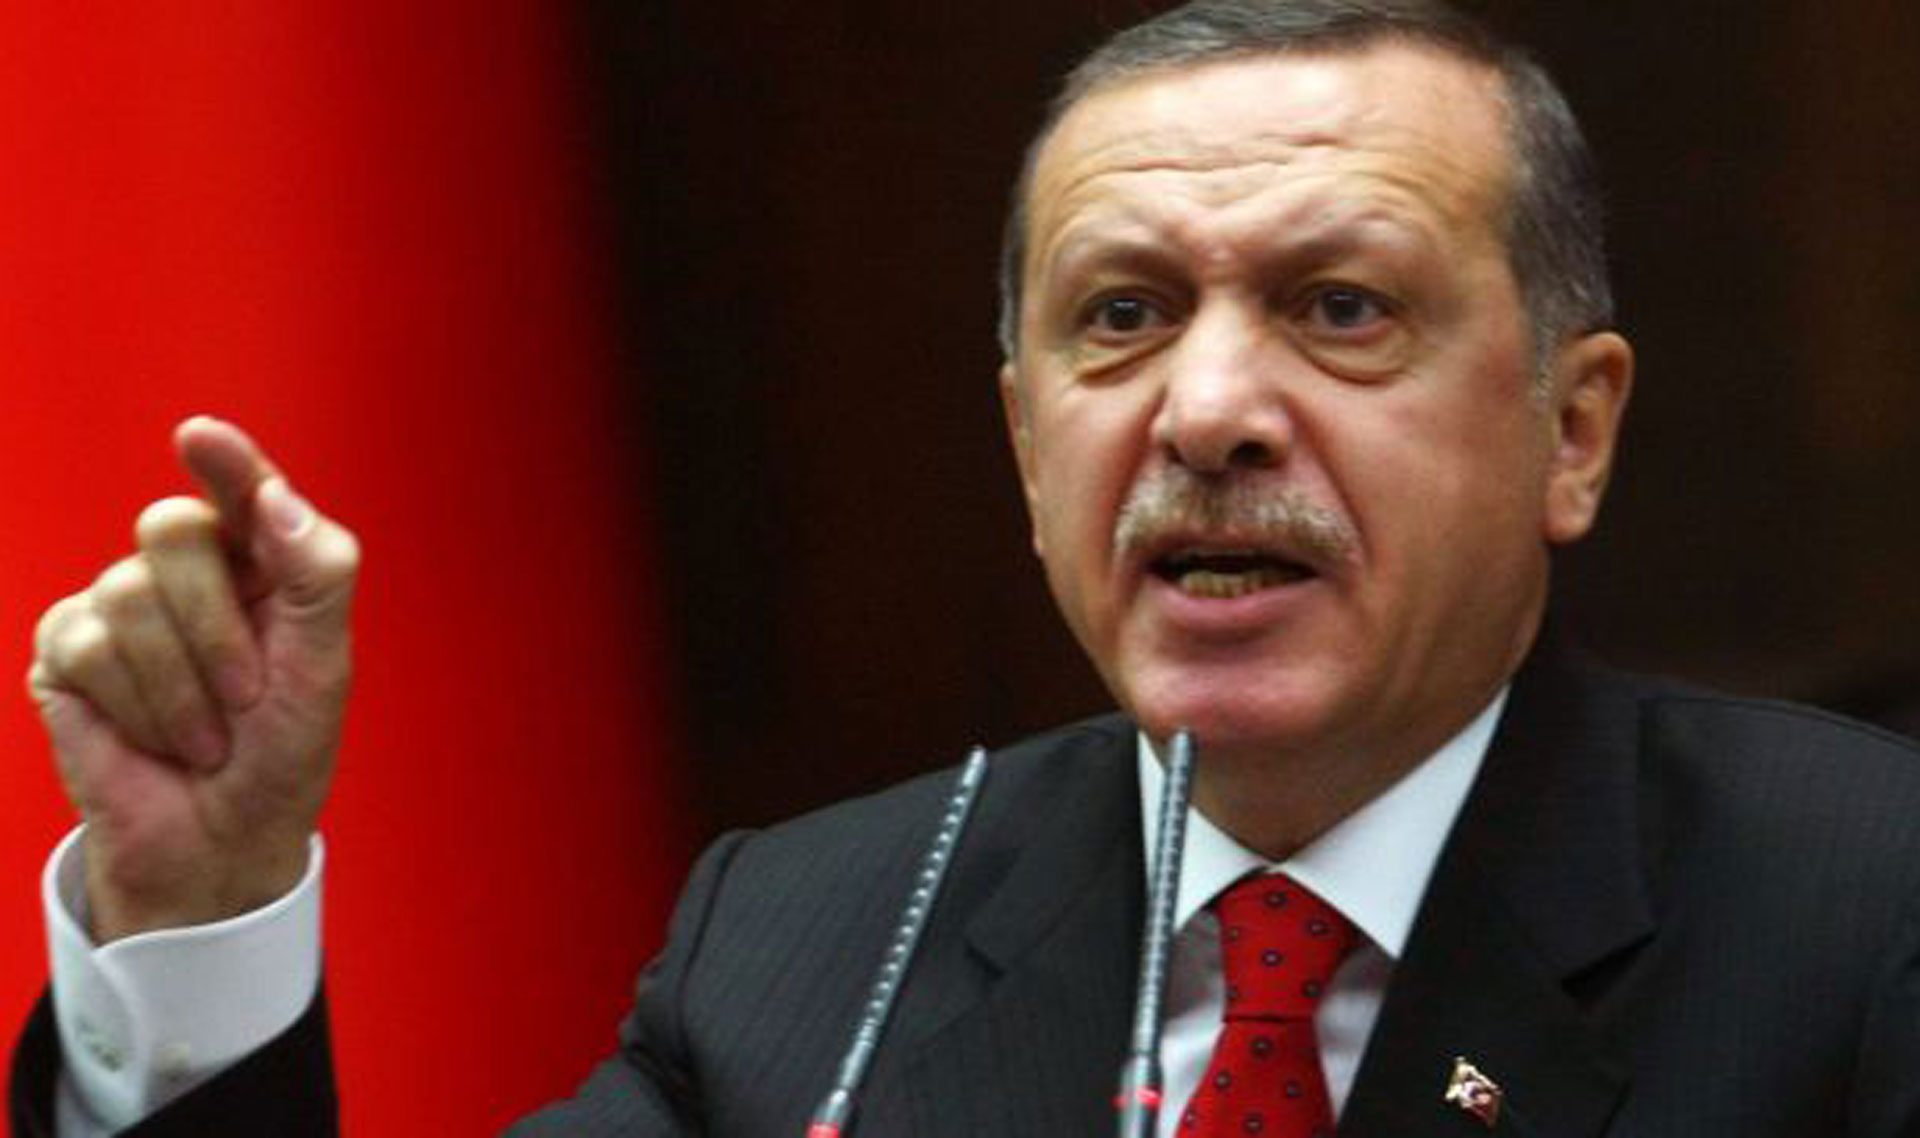 Τουρκικό δικαστήριο εξέδωσε σήμερα νέα εντάλματα σύλληψης σε βάρος 4 υπέρμαχων των ανθρωπίνων δικαιωμάτων